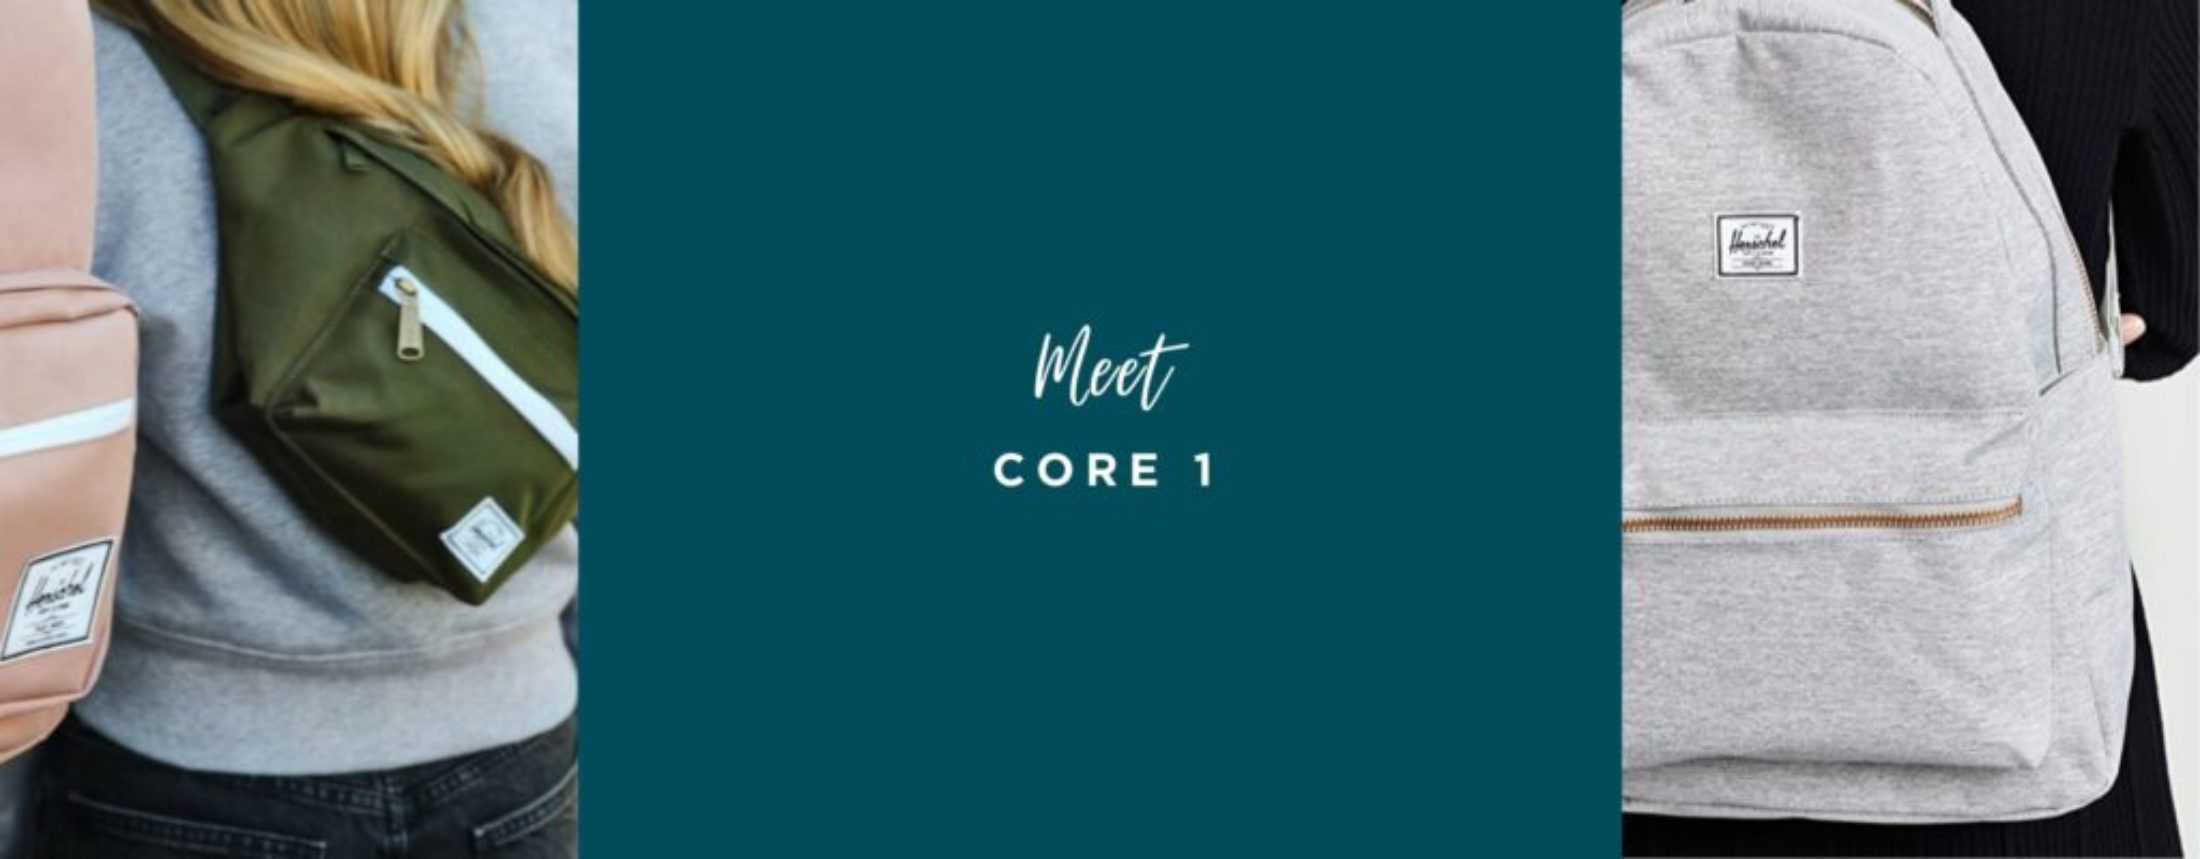 meet core 1